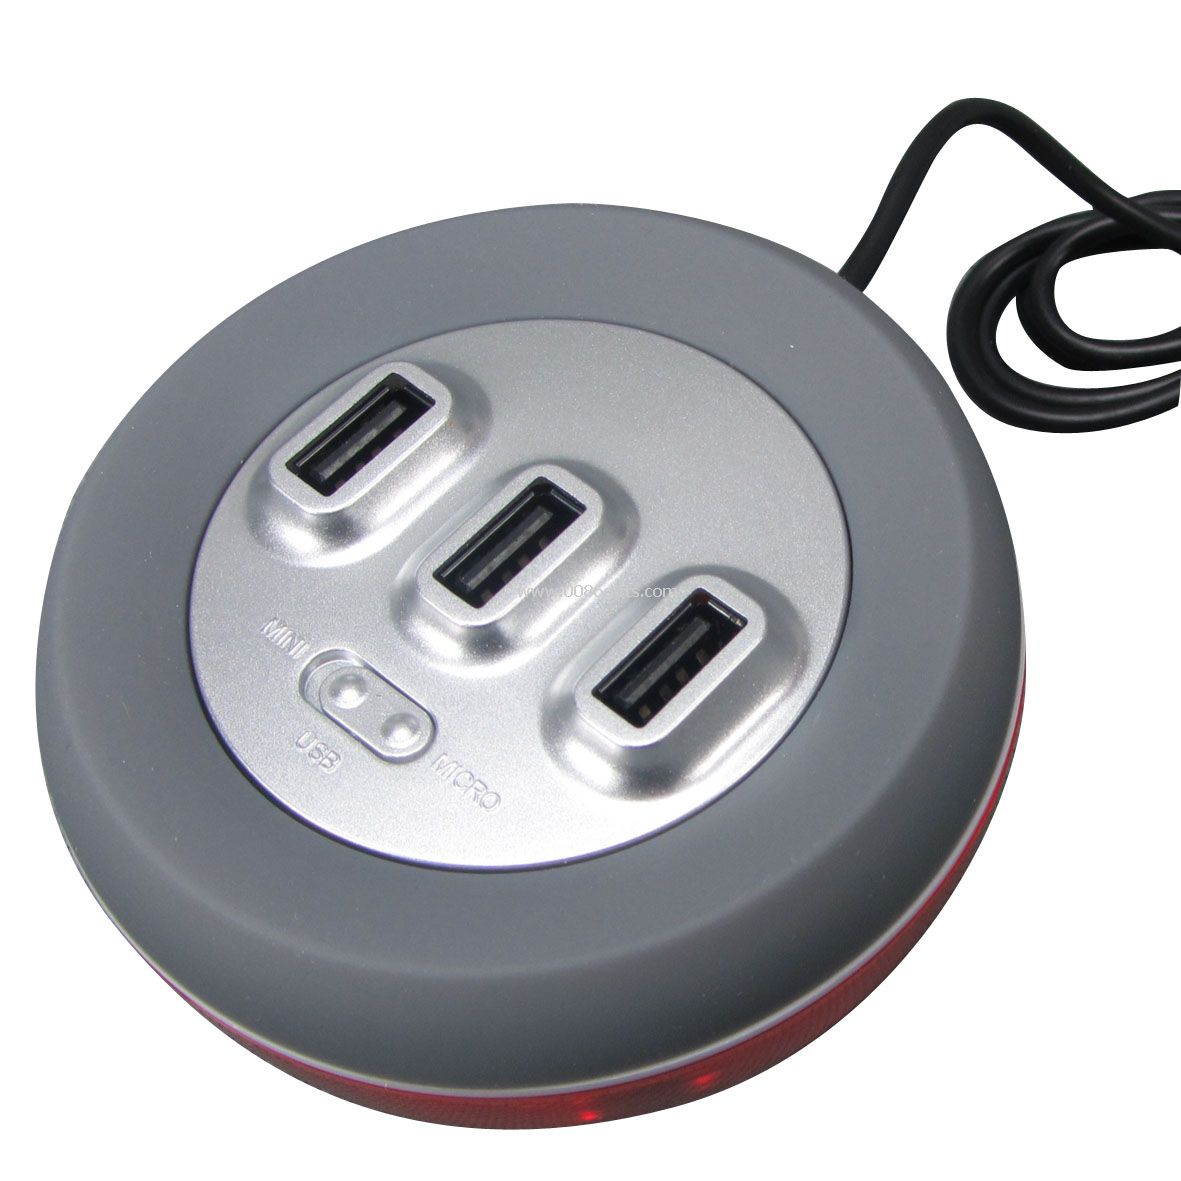 USB hub mobile phone charger